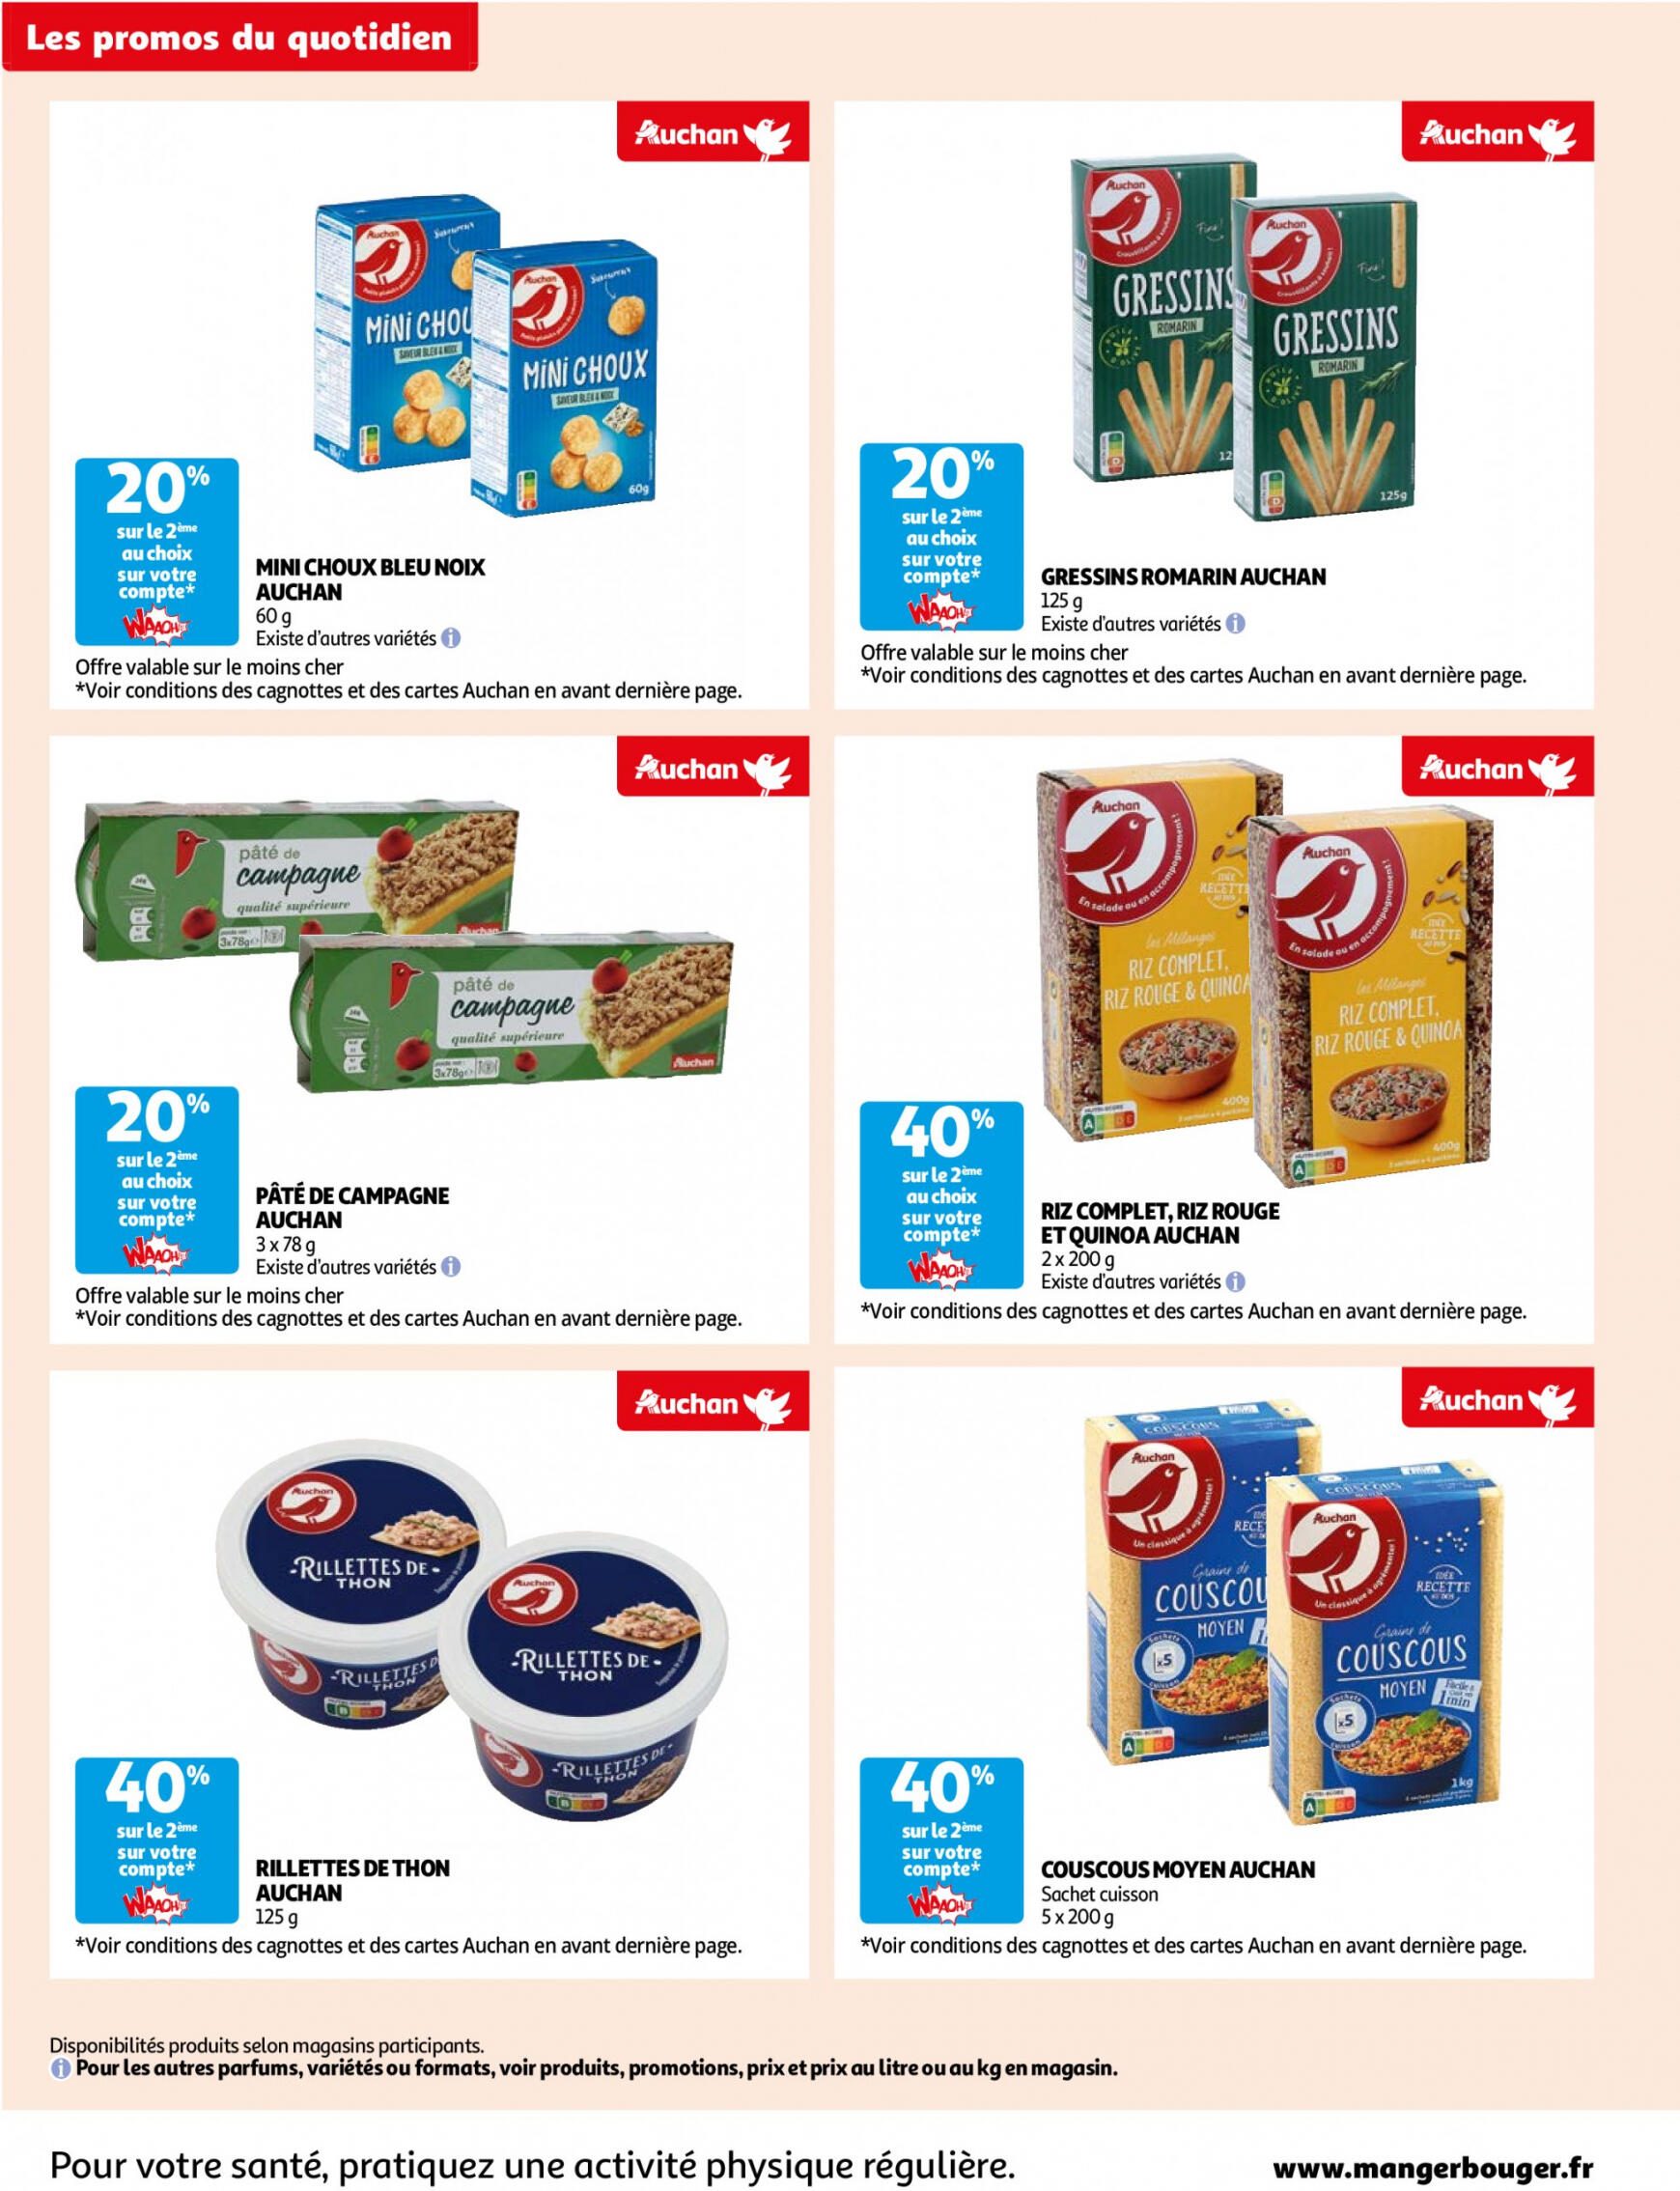 auchan - Prospectus Auchan Supermarché - Des économies au quotidien dans votre super actuel 14.05. - 02.06. - page: 4